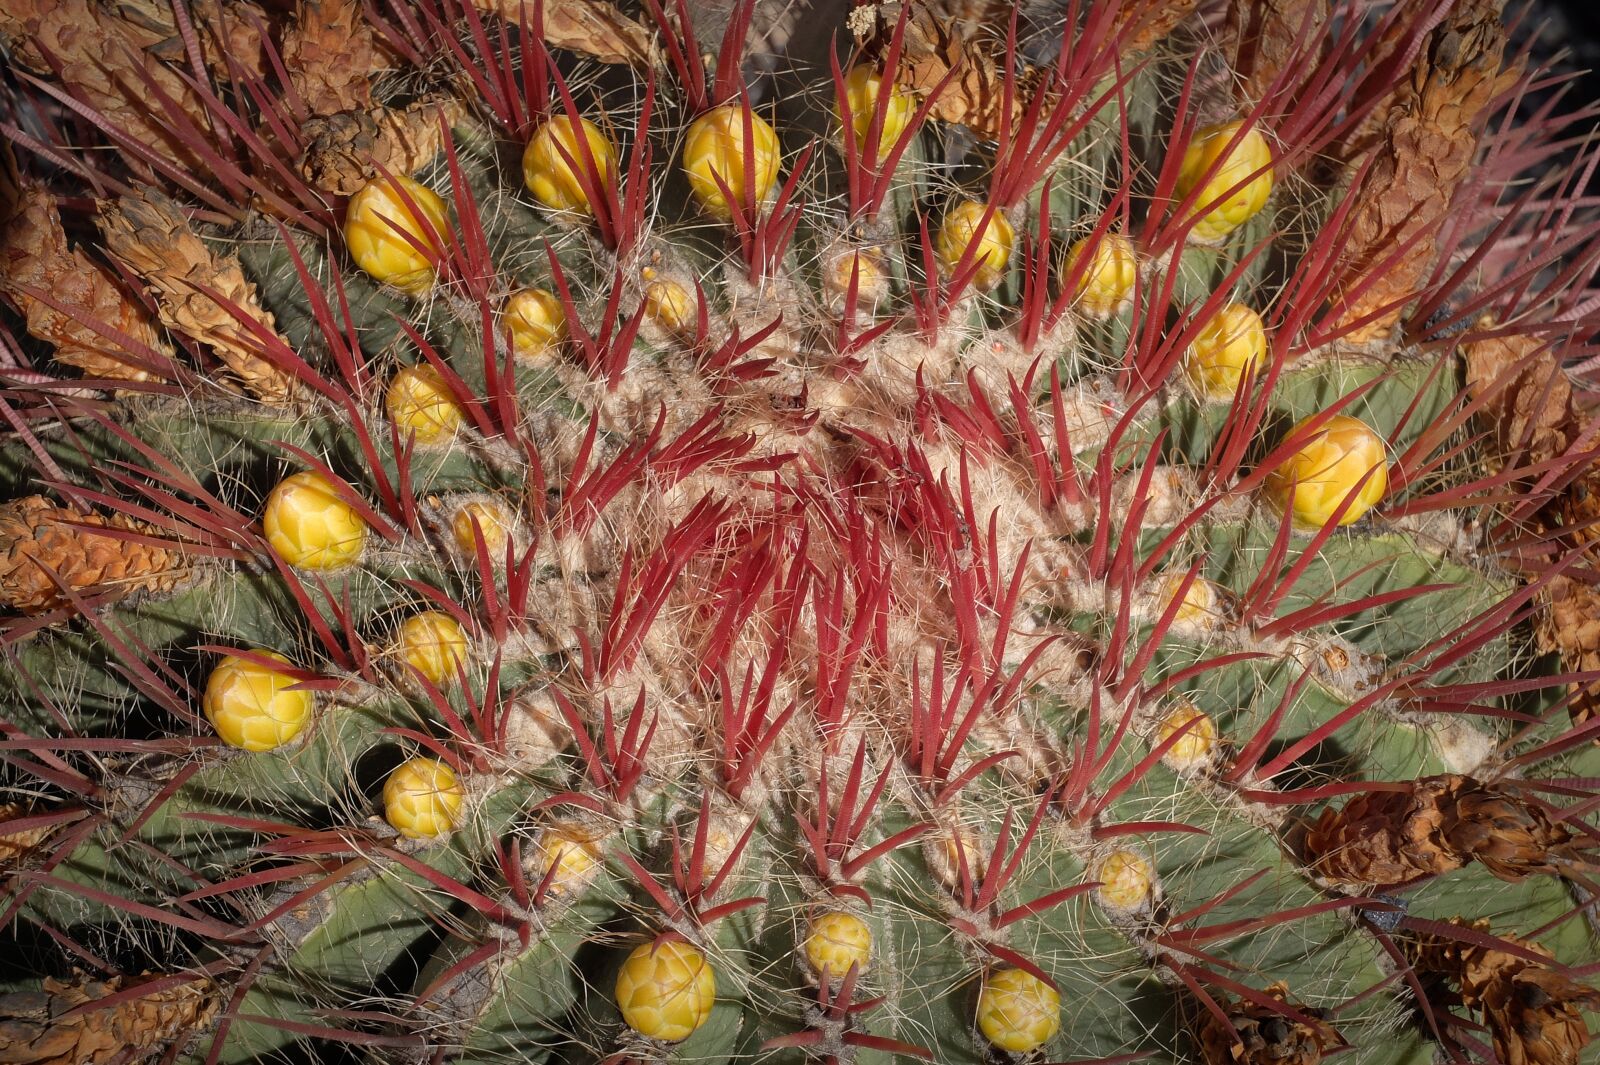 Fujifilm X30 sample photo. Garden, cactus, lanzarote photography